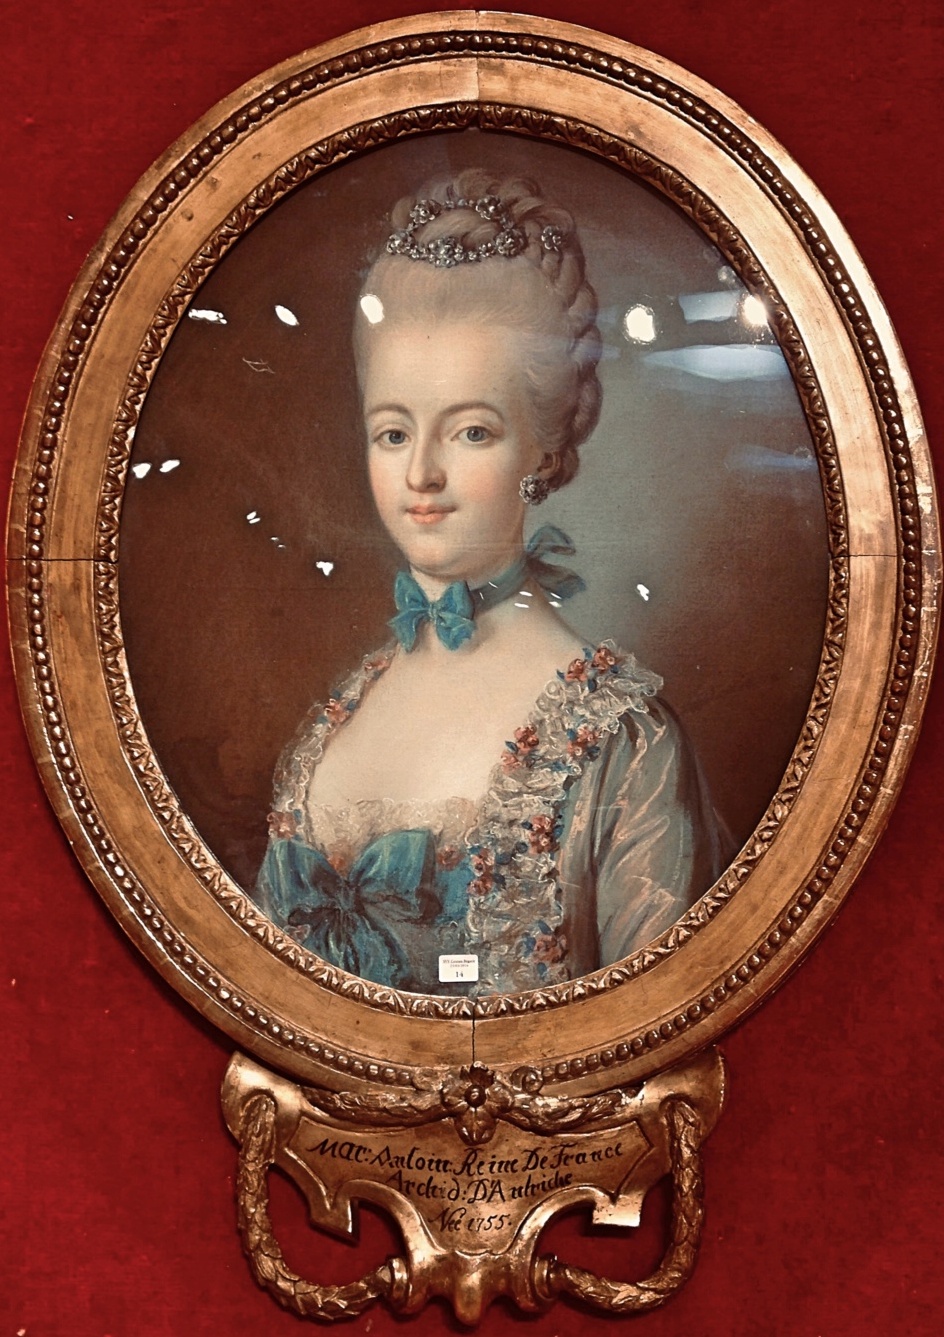 marie josephe - Portrait de Marie-Antoinette ou de Marie-Josèphe, par Meytens ? - Page 5 Adf8fd11